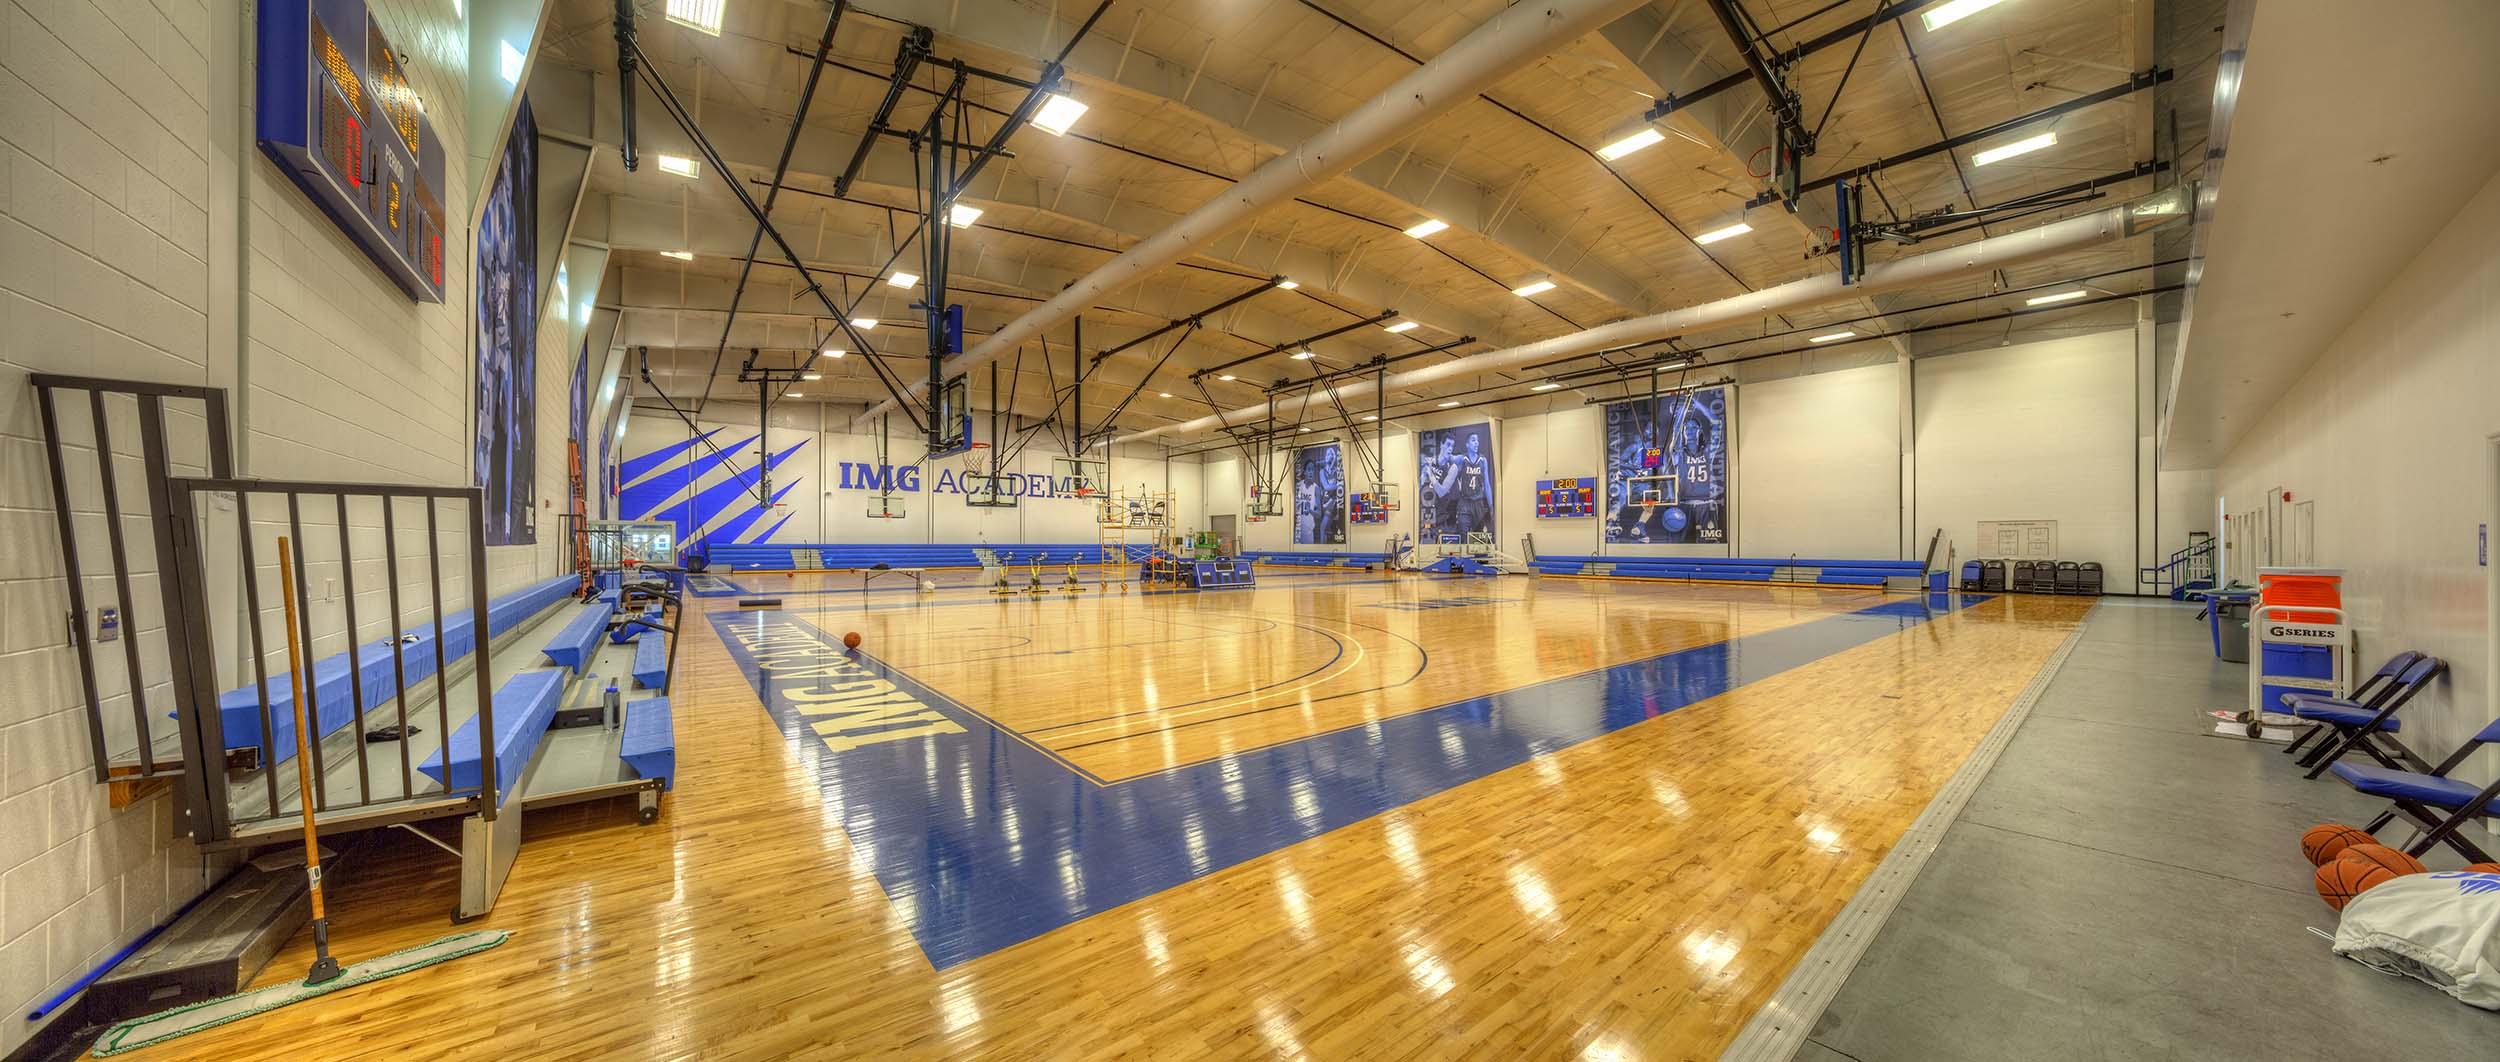 IMG Academy basketball courts | IMGAcademy.com